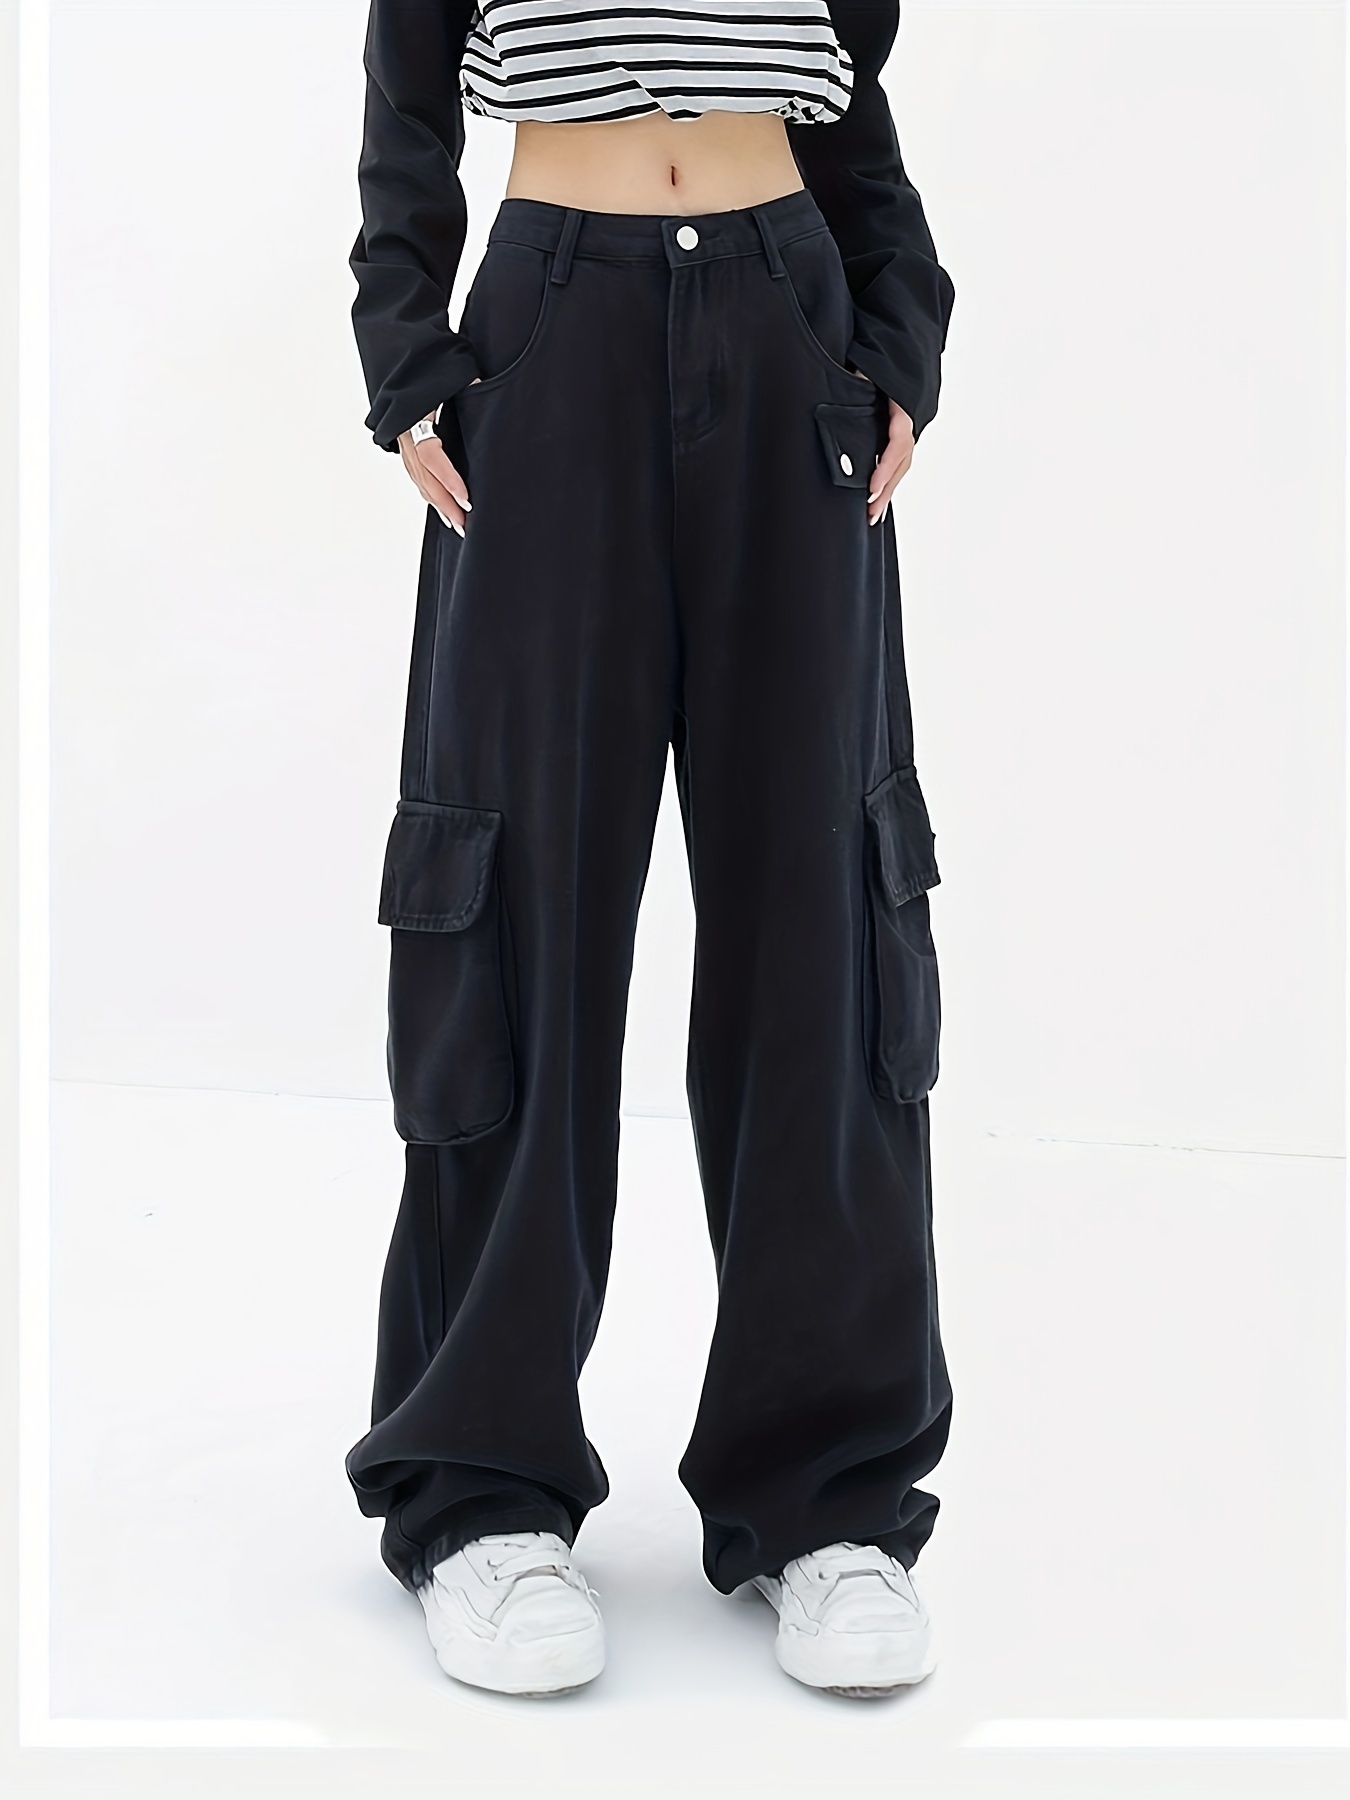 Jeans tipo cargo holgados de cintura media y alta para mujer con bolsillo  de solapa, pantalones de mezclilla holgados de pierna ancha para mujer